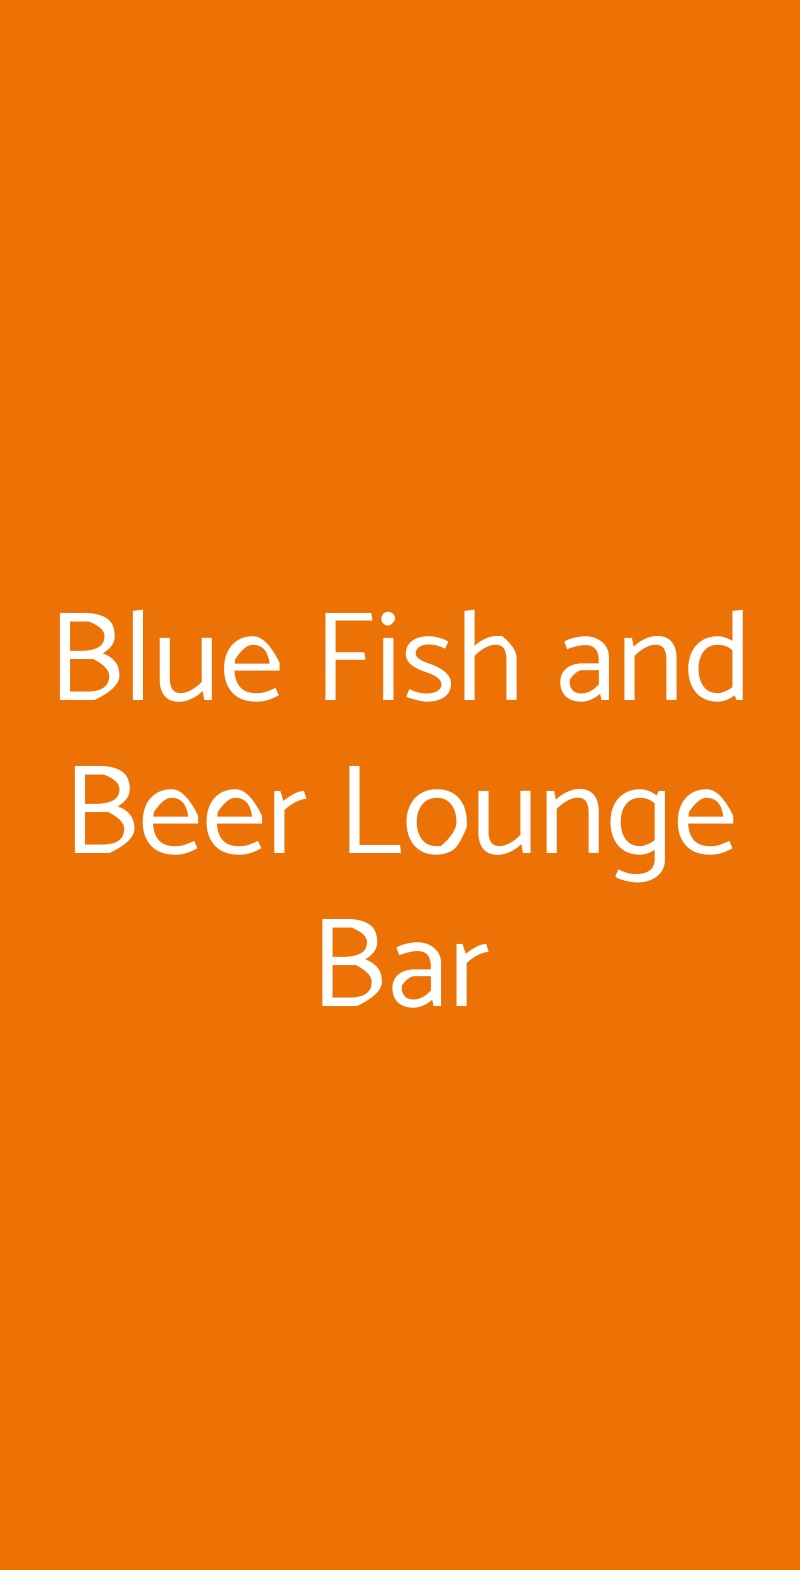 Blue Fish and Beer Lounge Bar Anguillara Sabazia menù 1 pagina